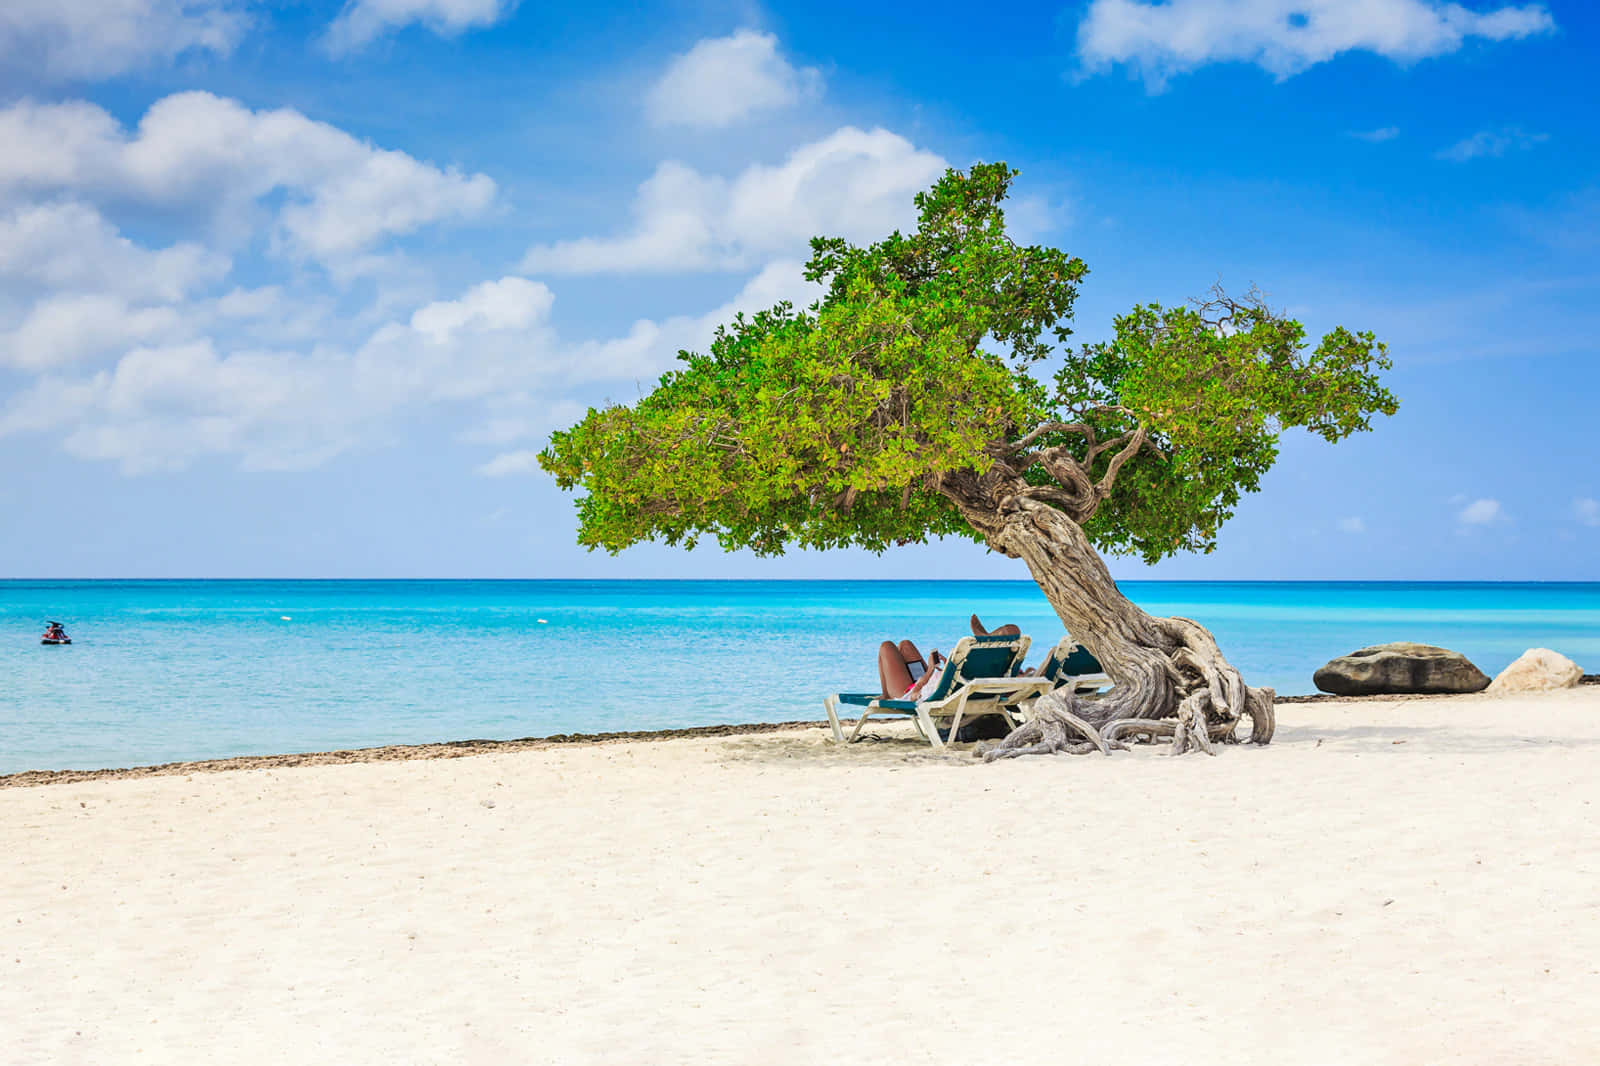 Aruba Beach Tree Pictures